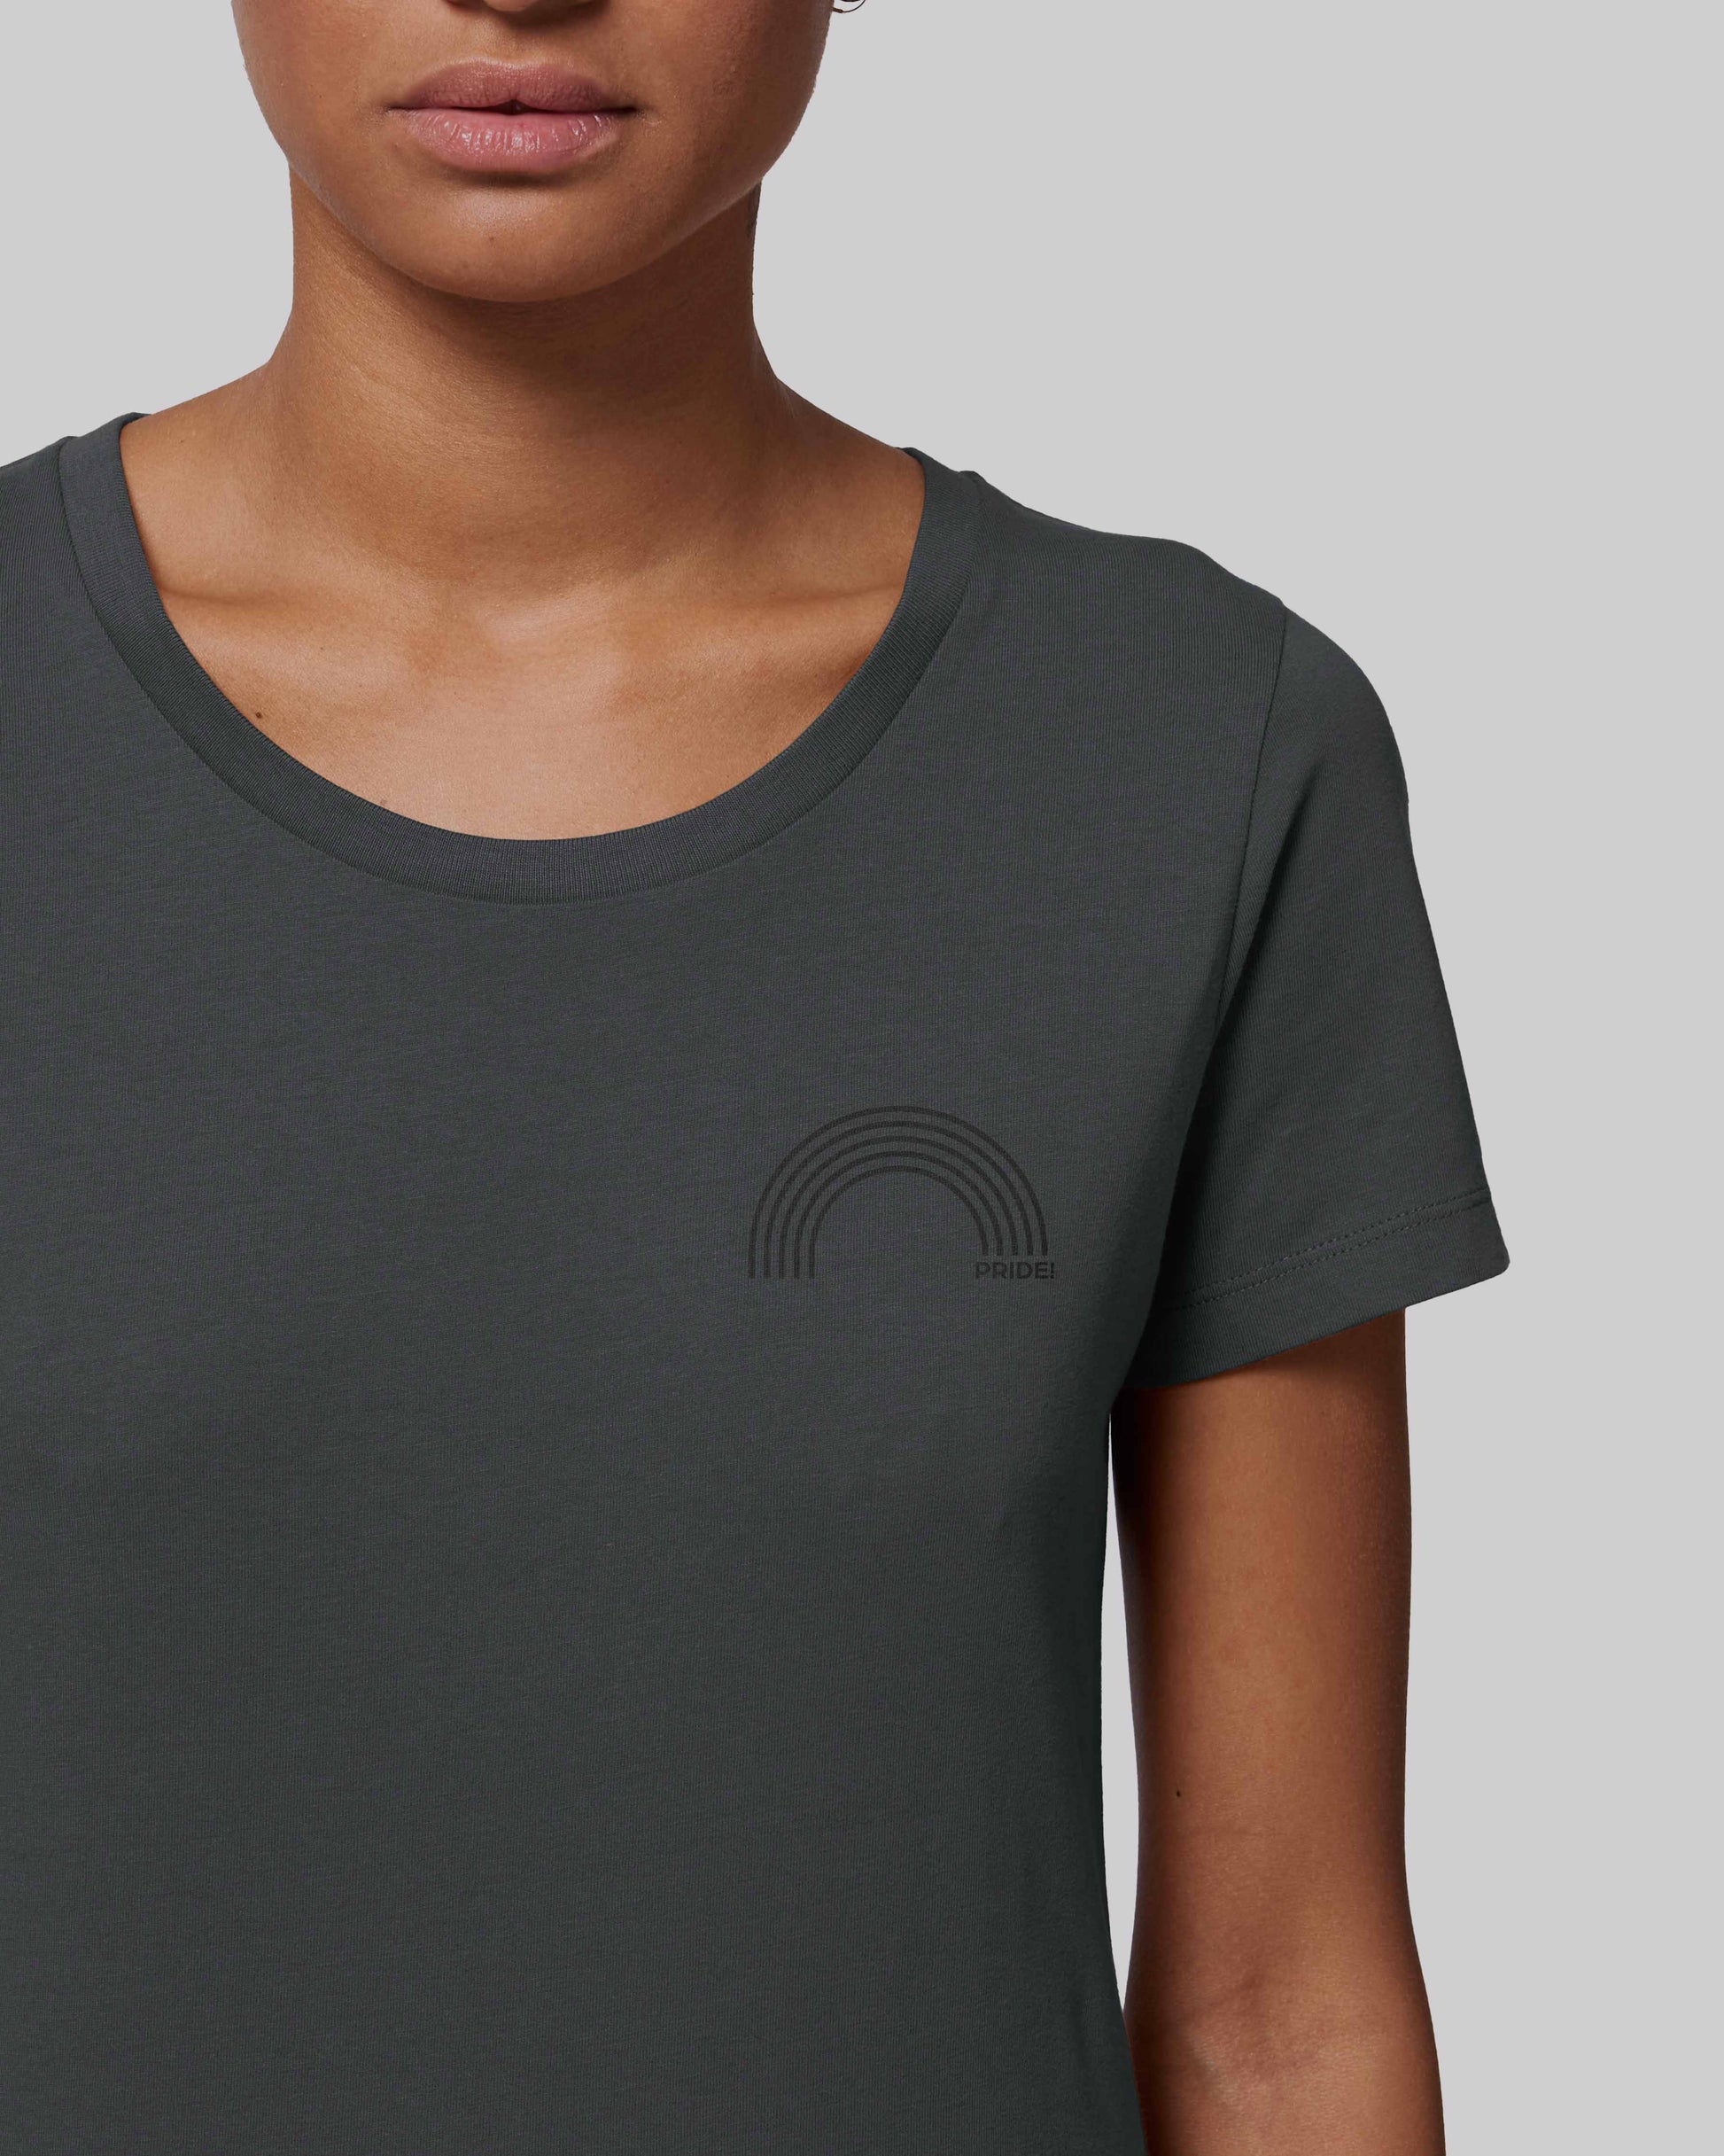 EINHORST® Organic Shirt tailliert in "Anthracite" mit dem Motiv "pride Regenbogen" in der Kombination schwarzer Regenbogen mit schwarzer Schrift, Bild von weiblicher Person mit Shirt